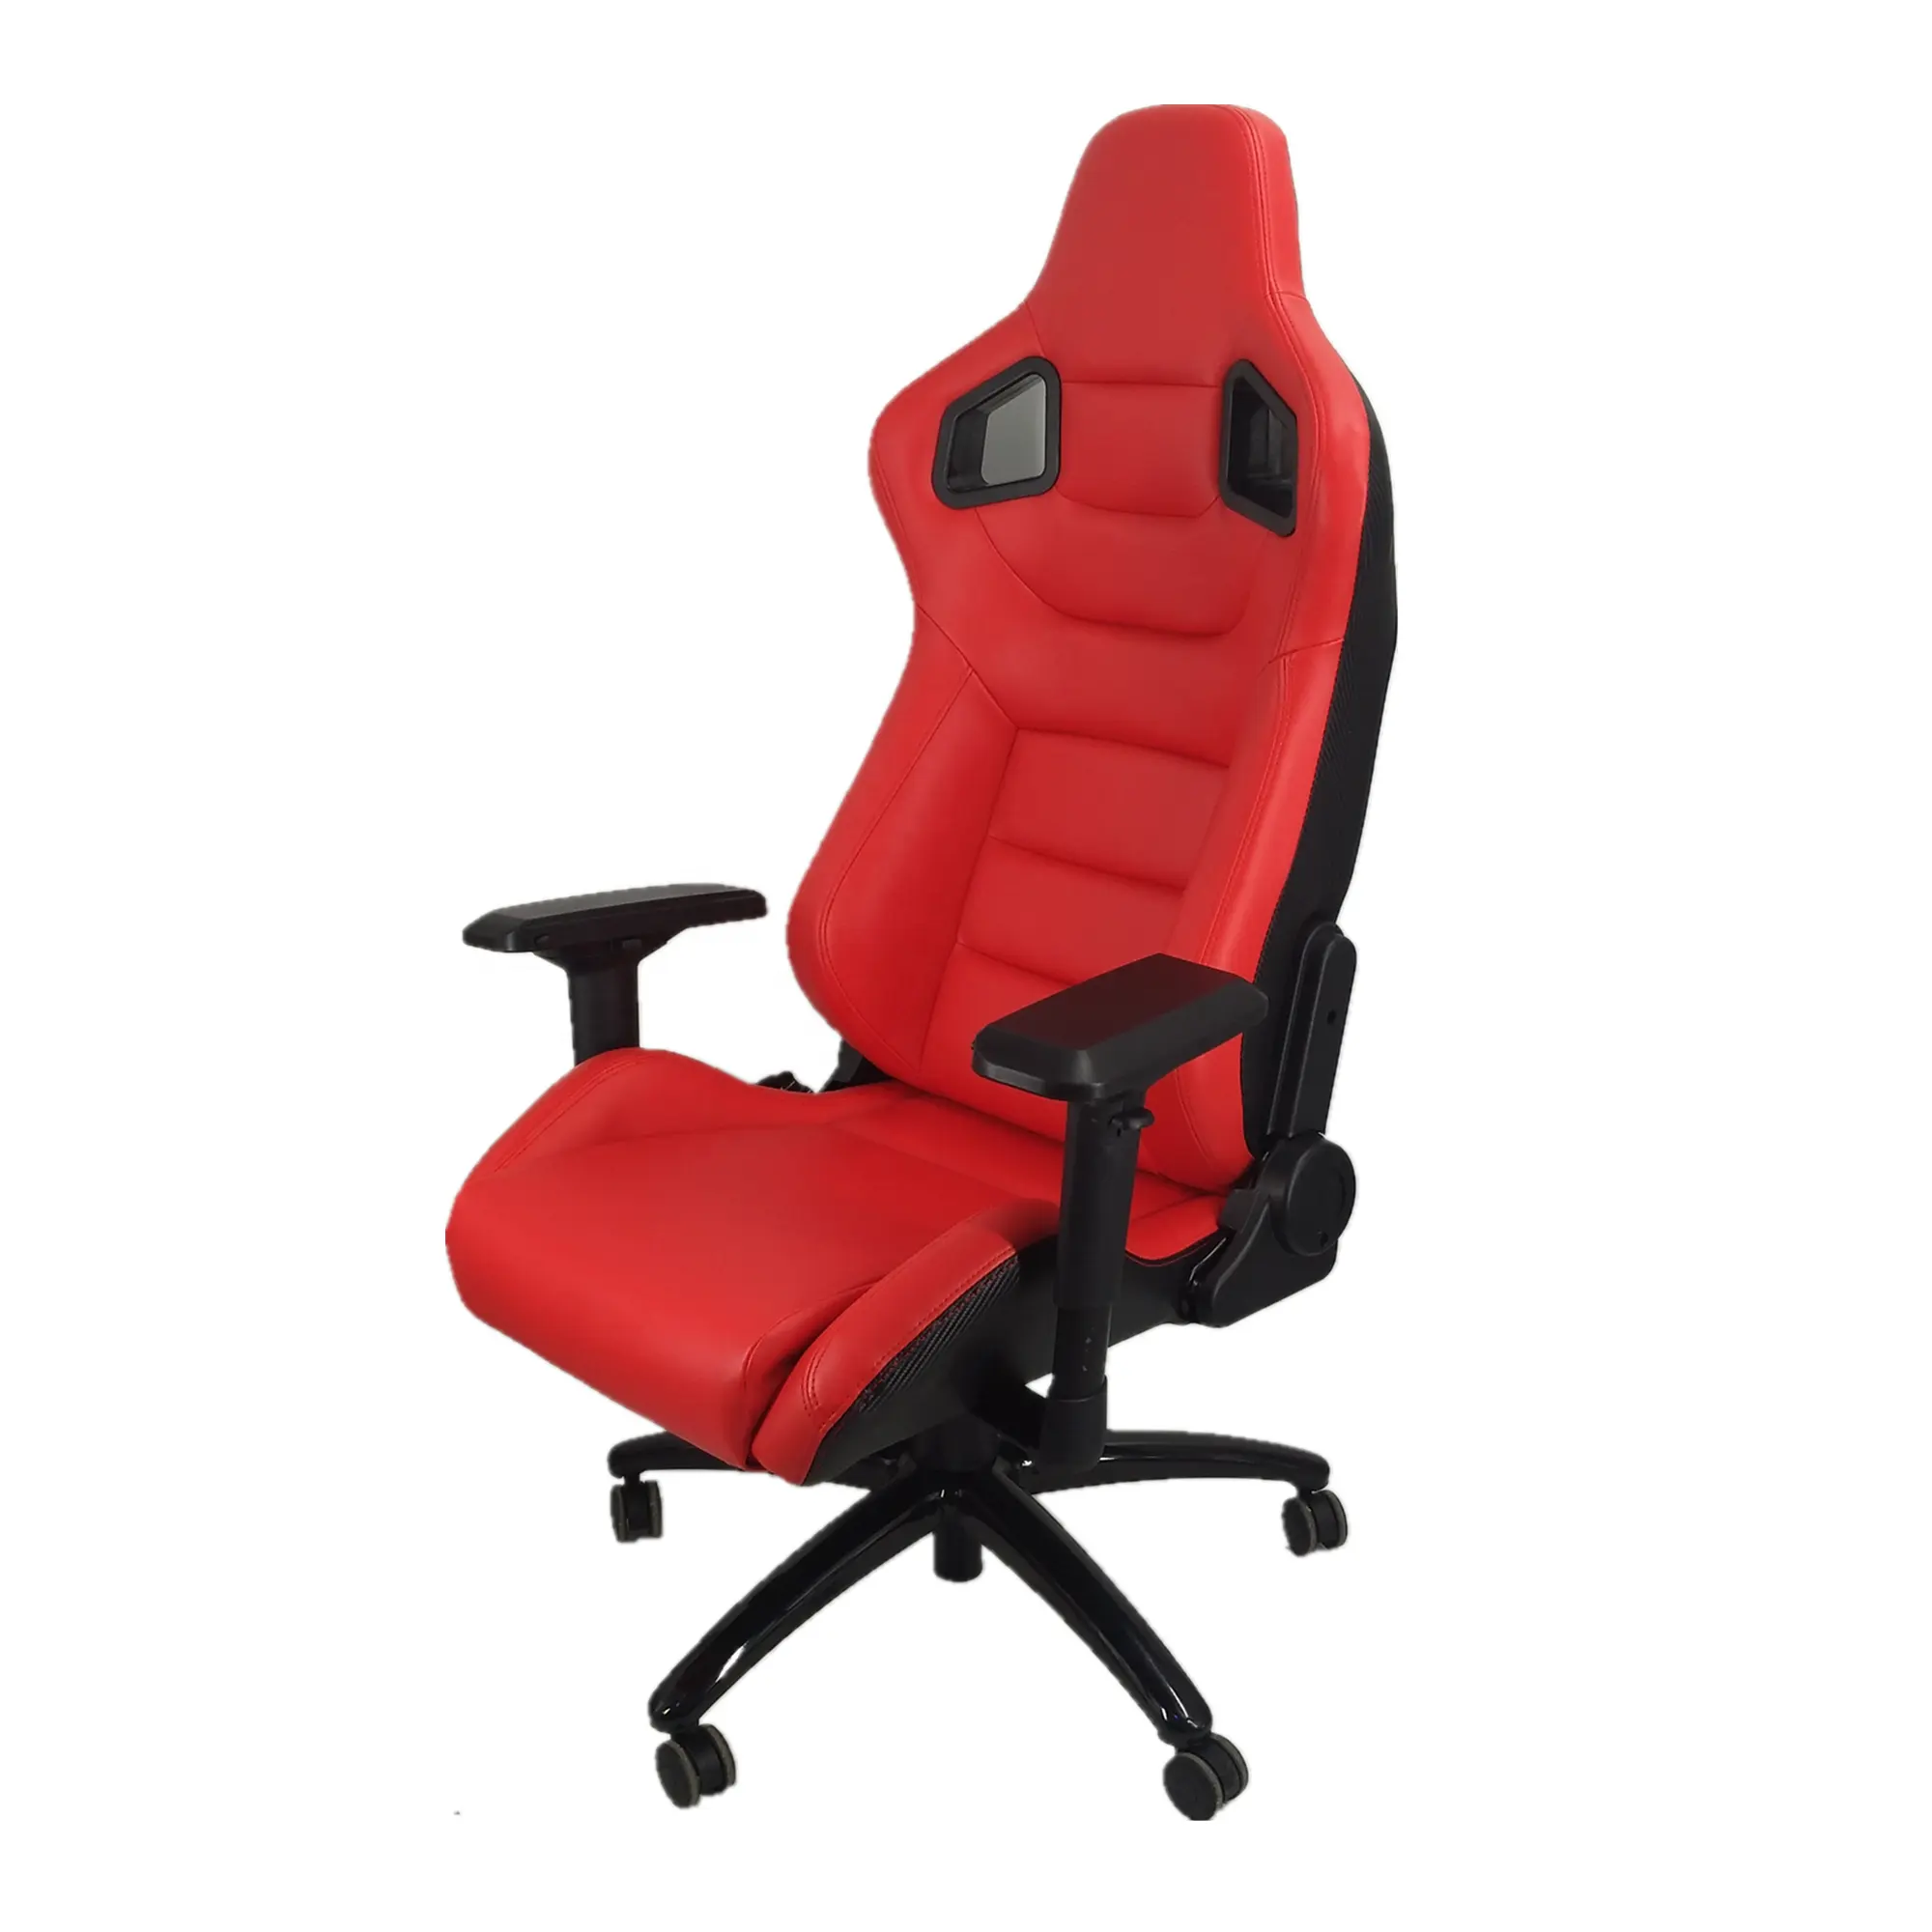 Yarış ofis koltuğu kırmızı PVC deri karbon bak ile 4D kol dayanağı oyun sandalyesi çin ofis mobilyaları kırmızı renk hakiki deri